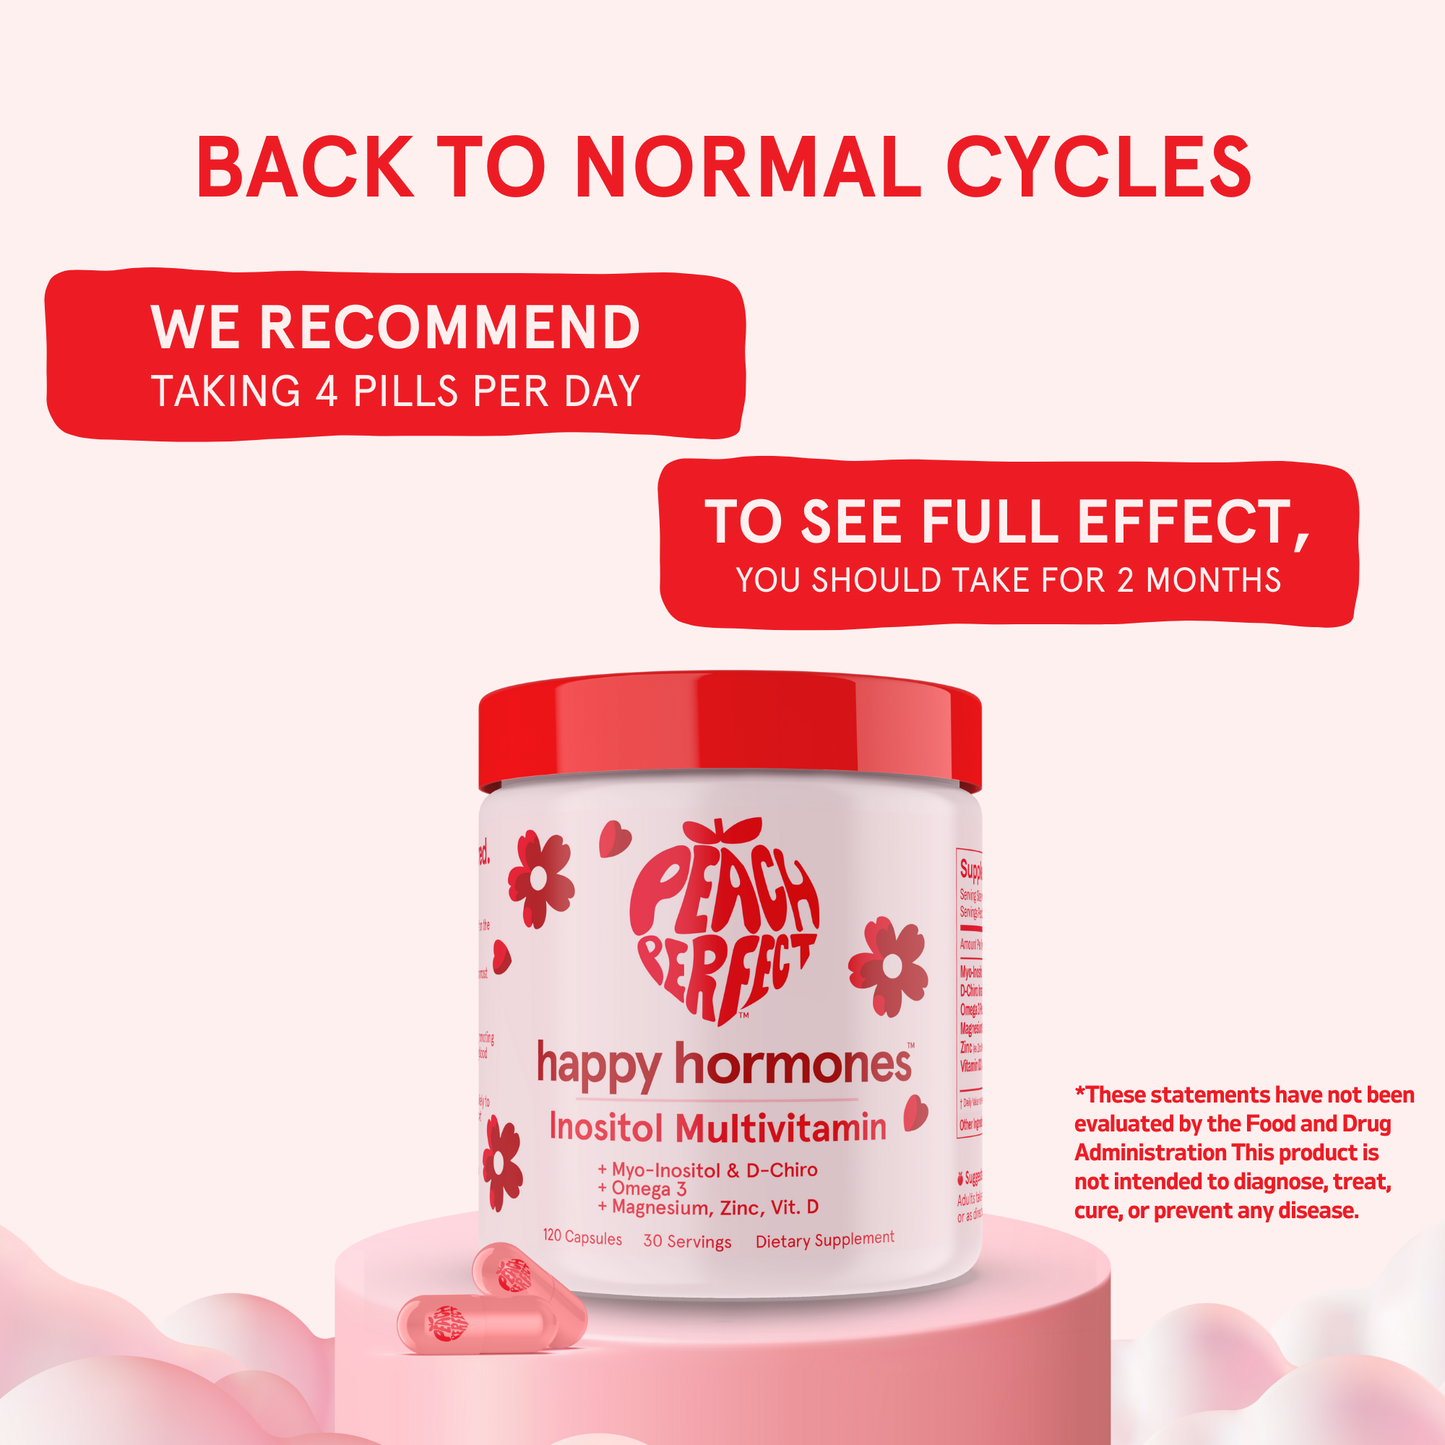 Happy Hormones PCOS Multivitamin (V0)